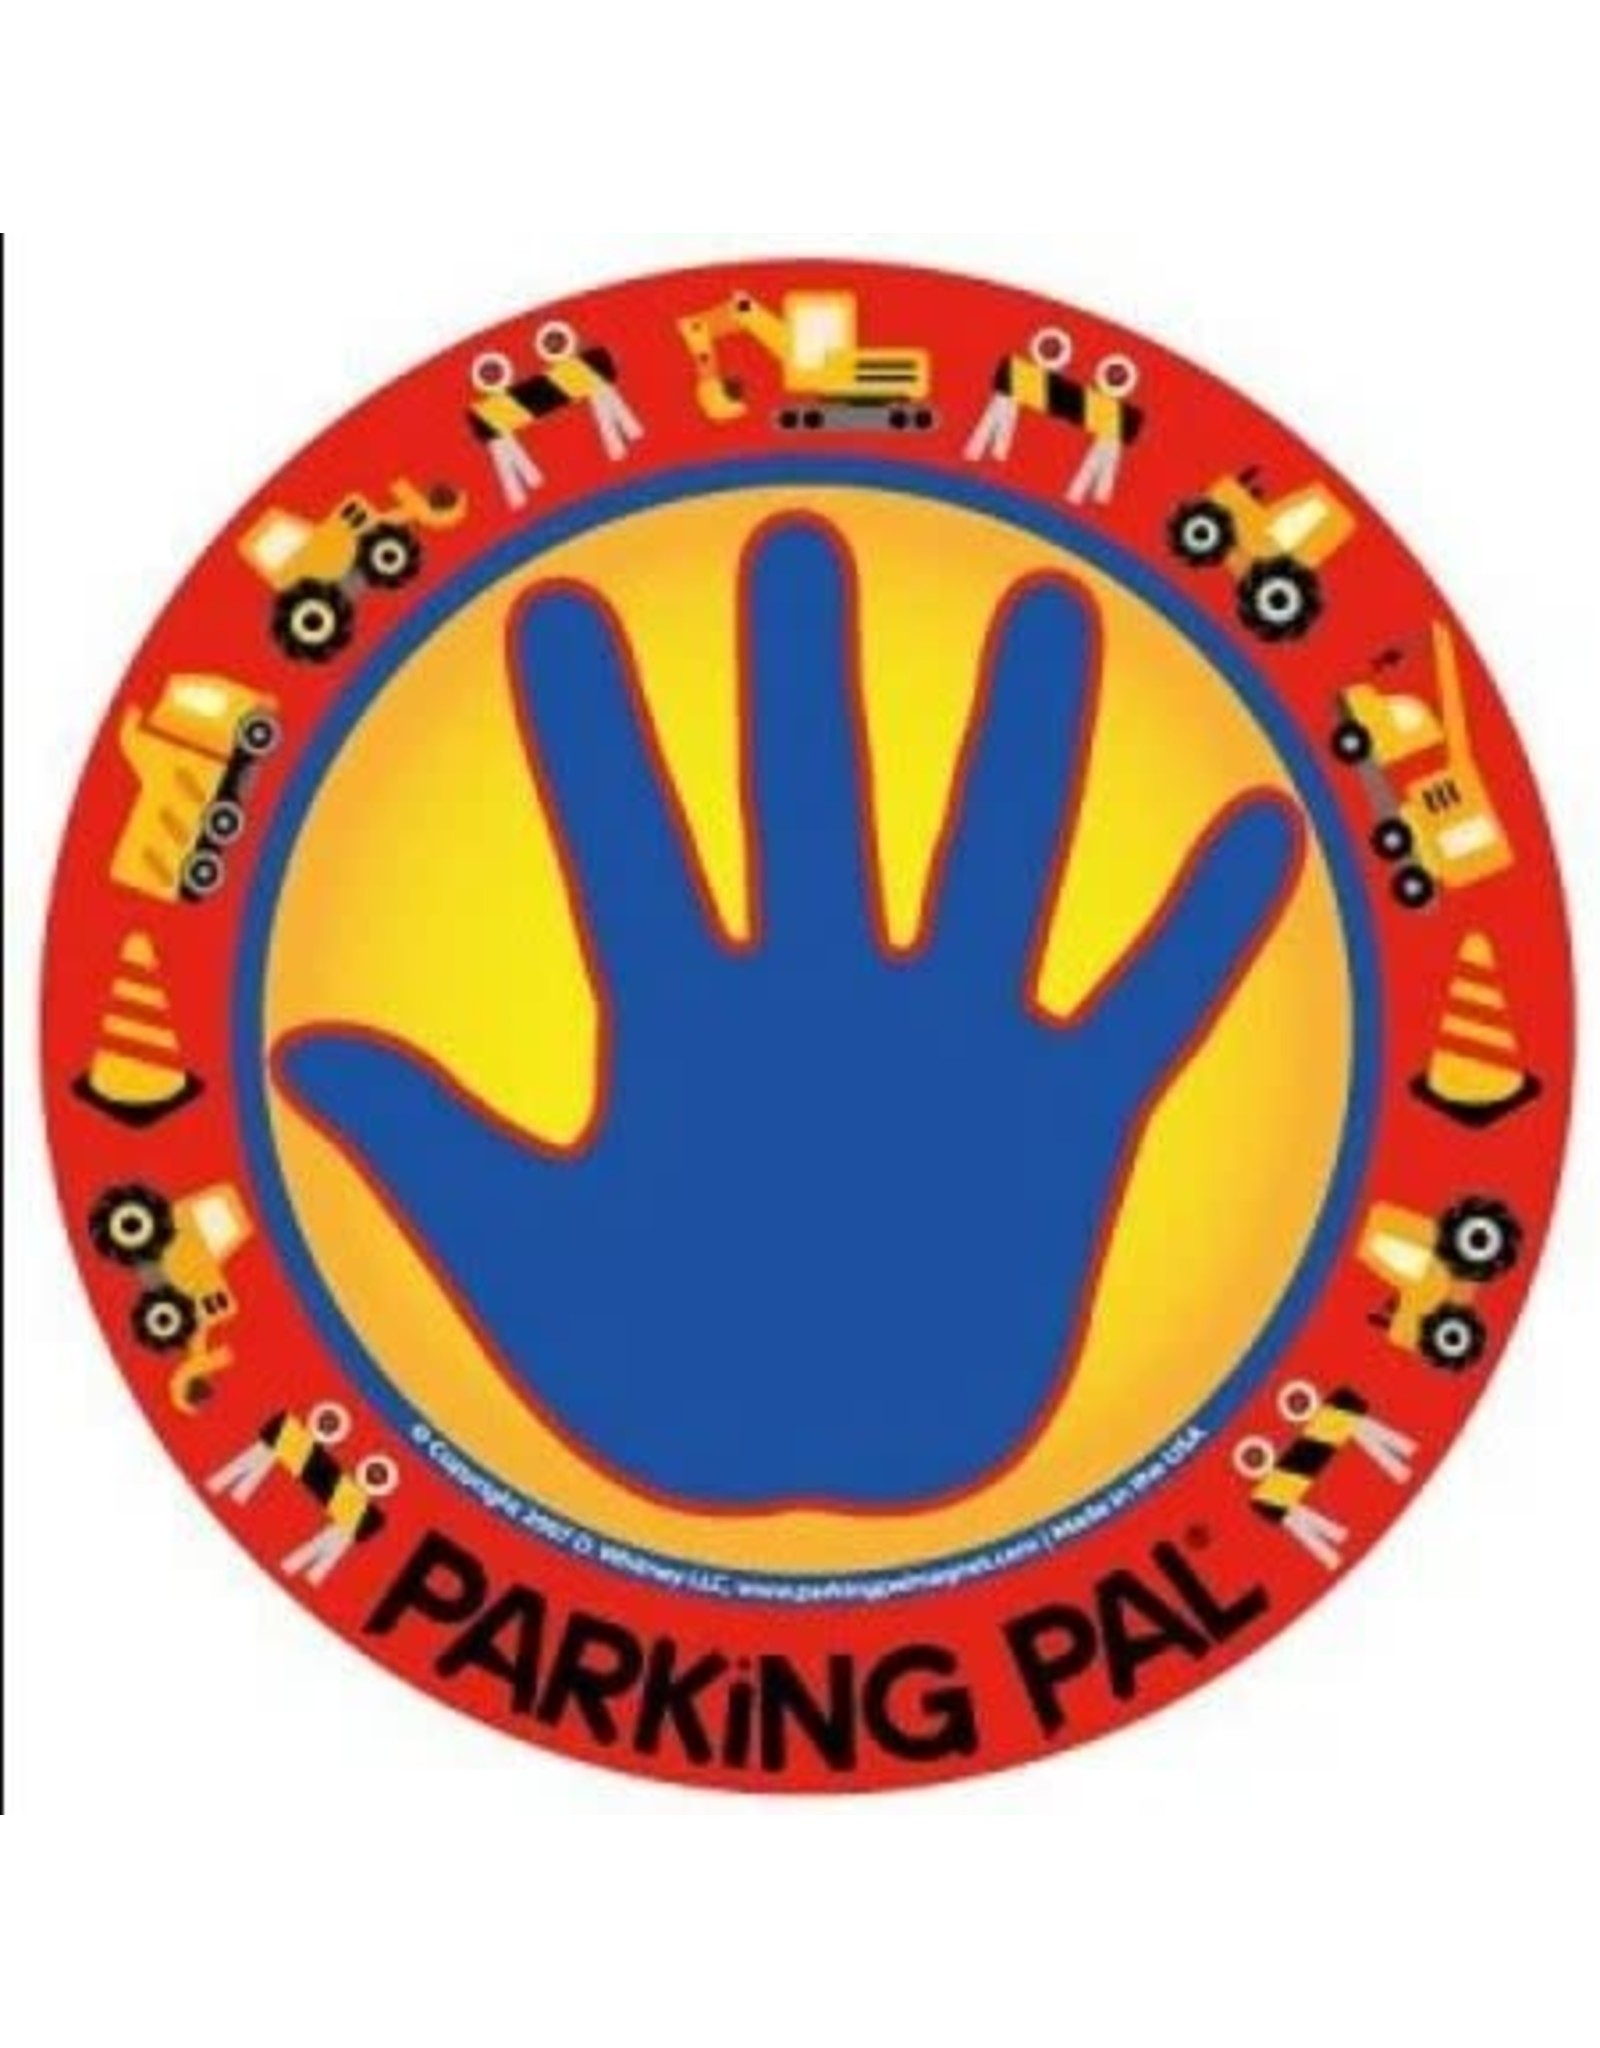 Construction Parking Pal Car Magnet